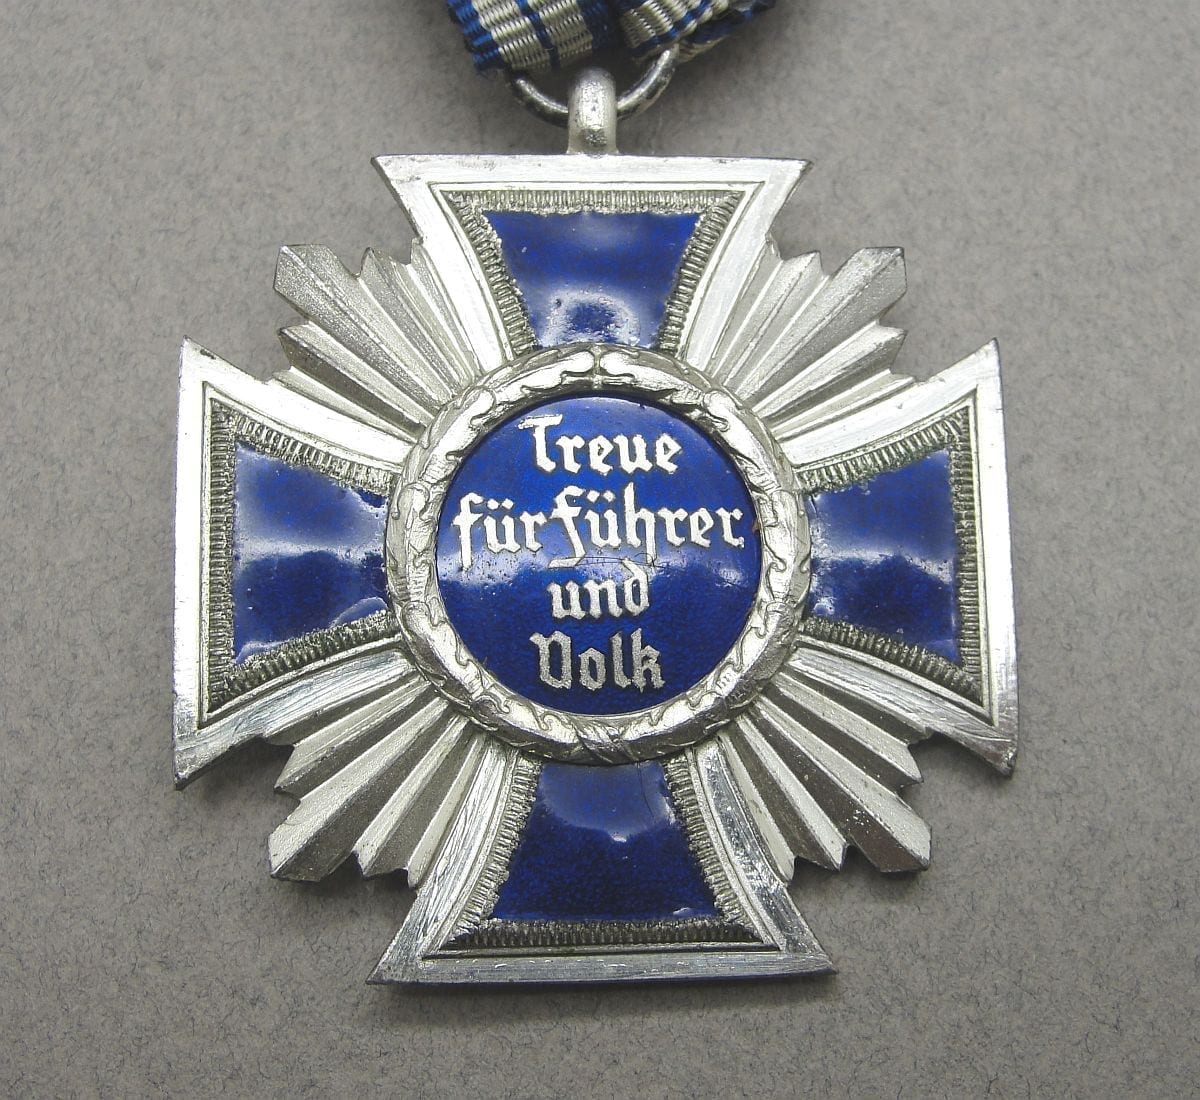 NSDAP 15 Year Long Service Cross by "2" C.E. Juncker